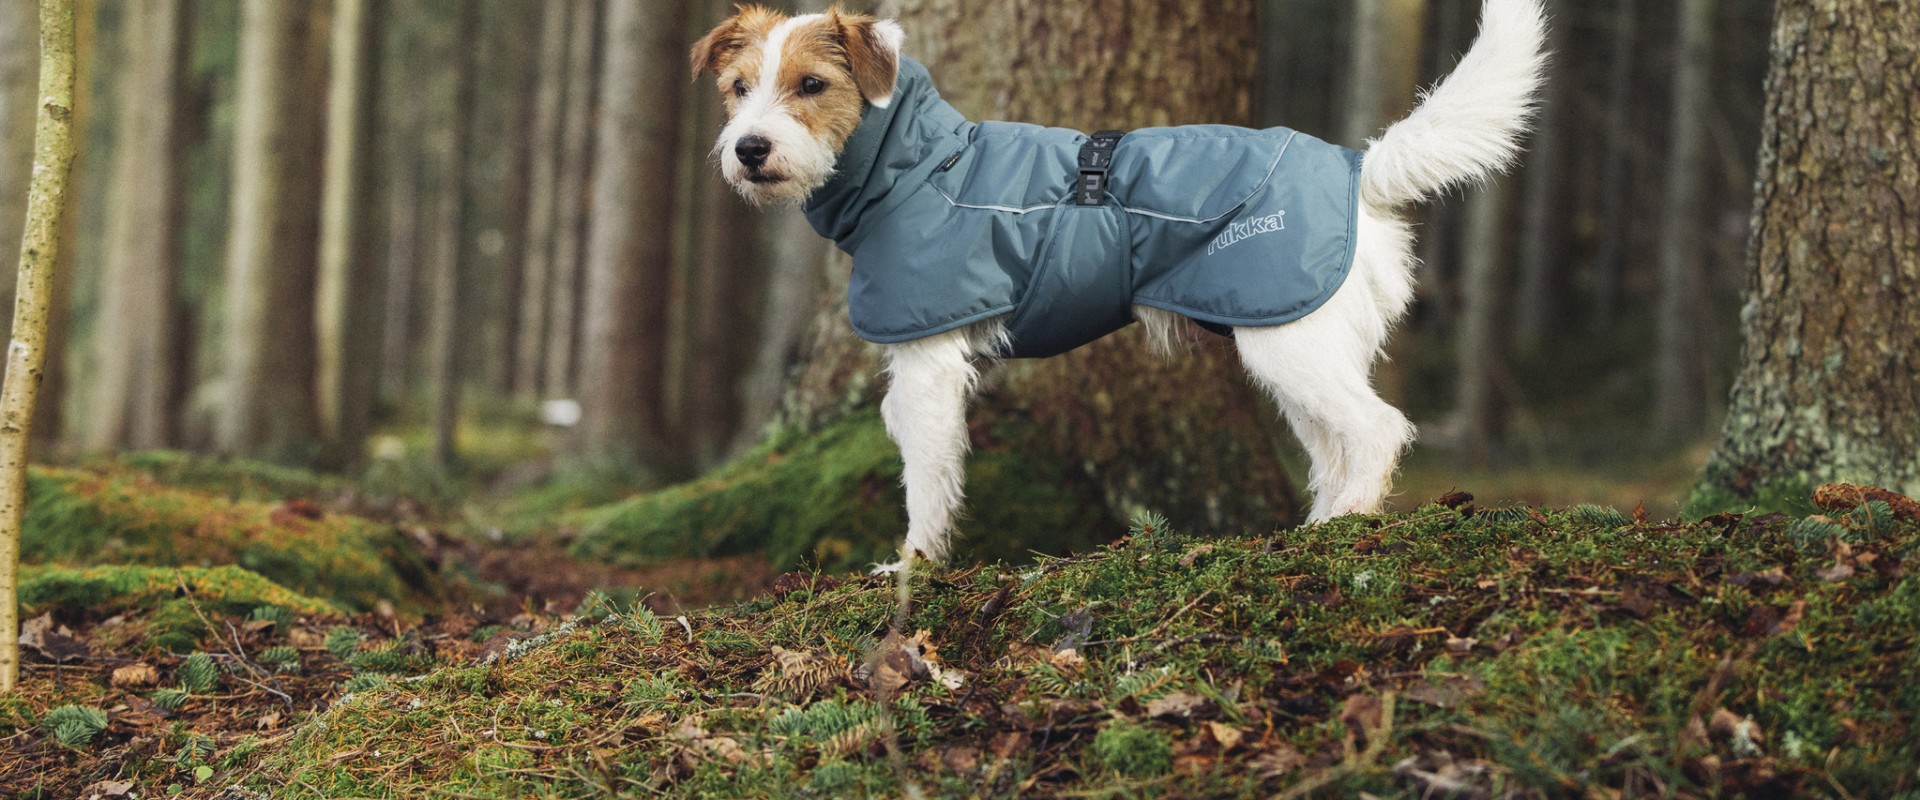 Moeten honden jassen dragen bij koud weer?